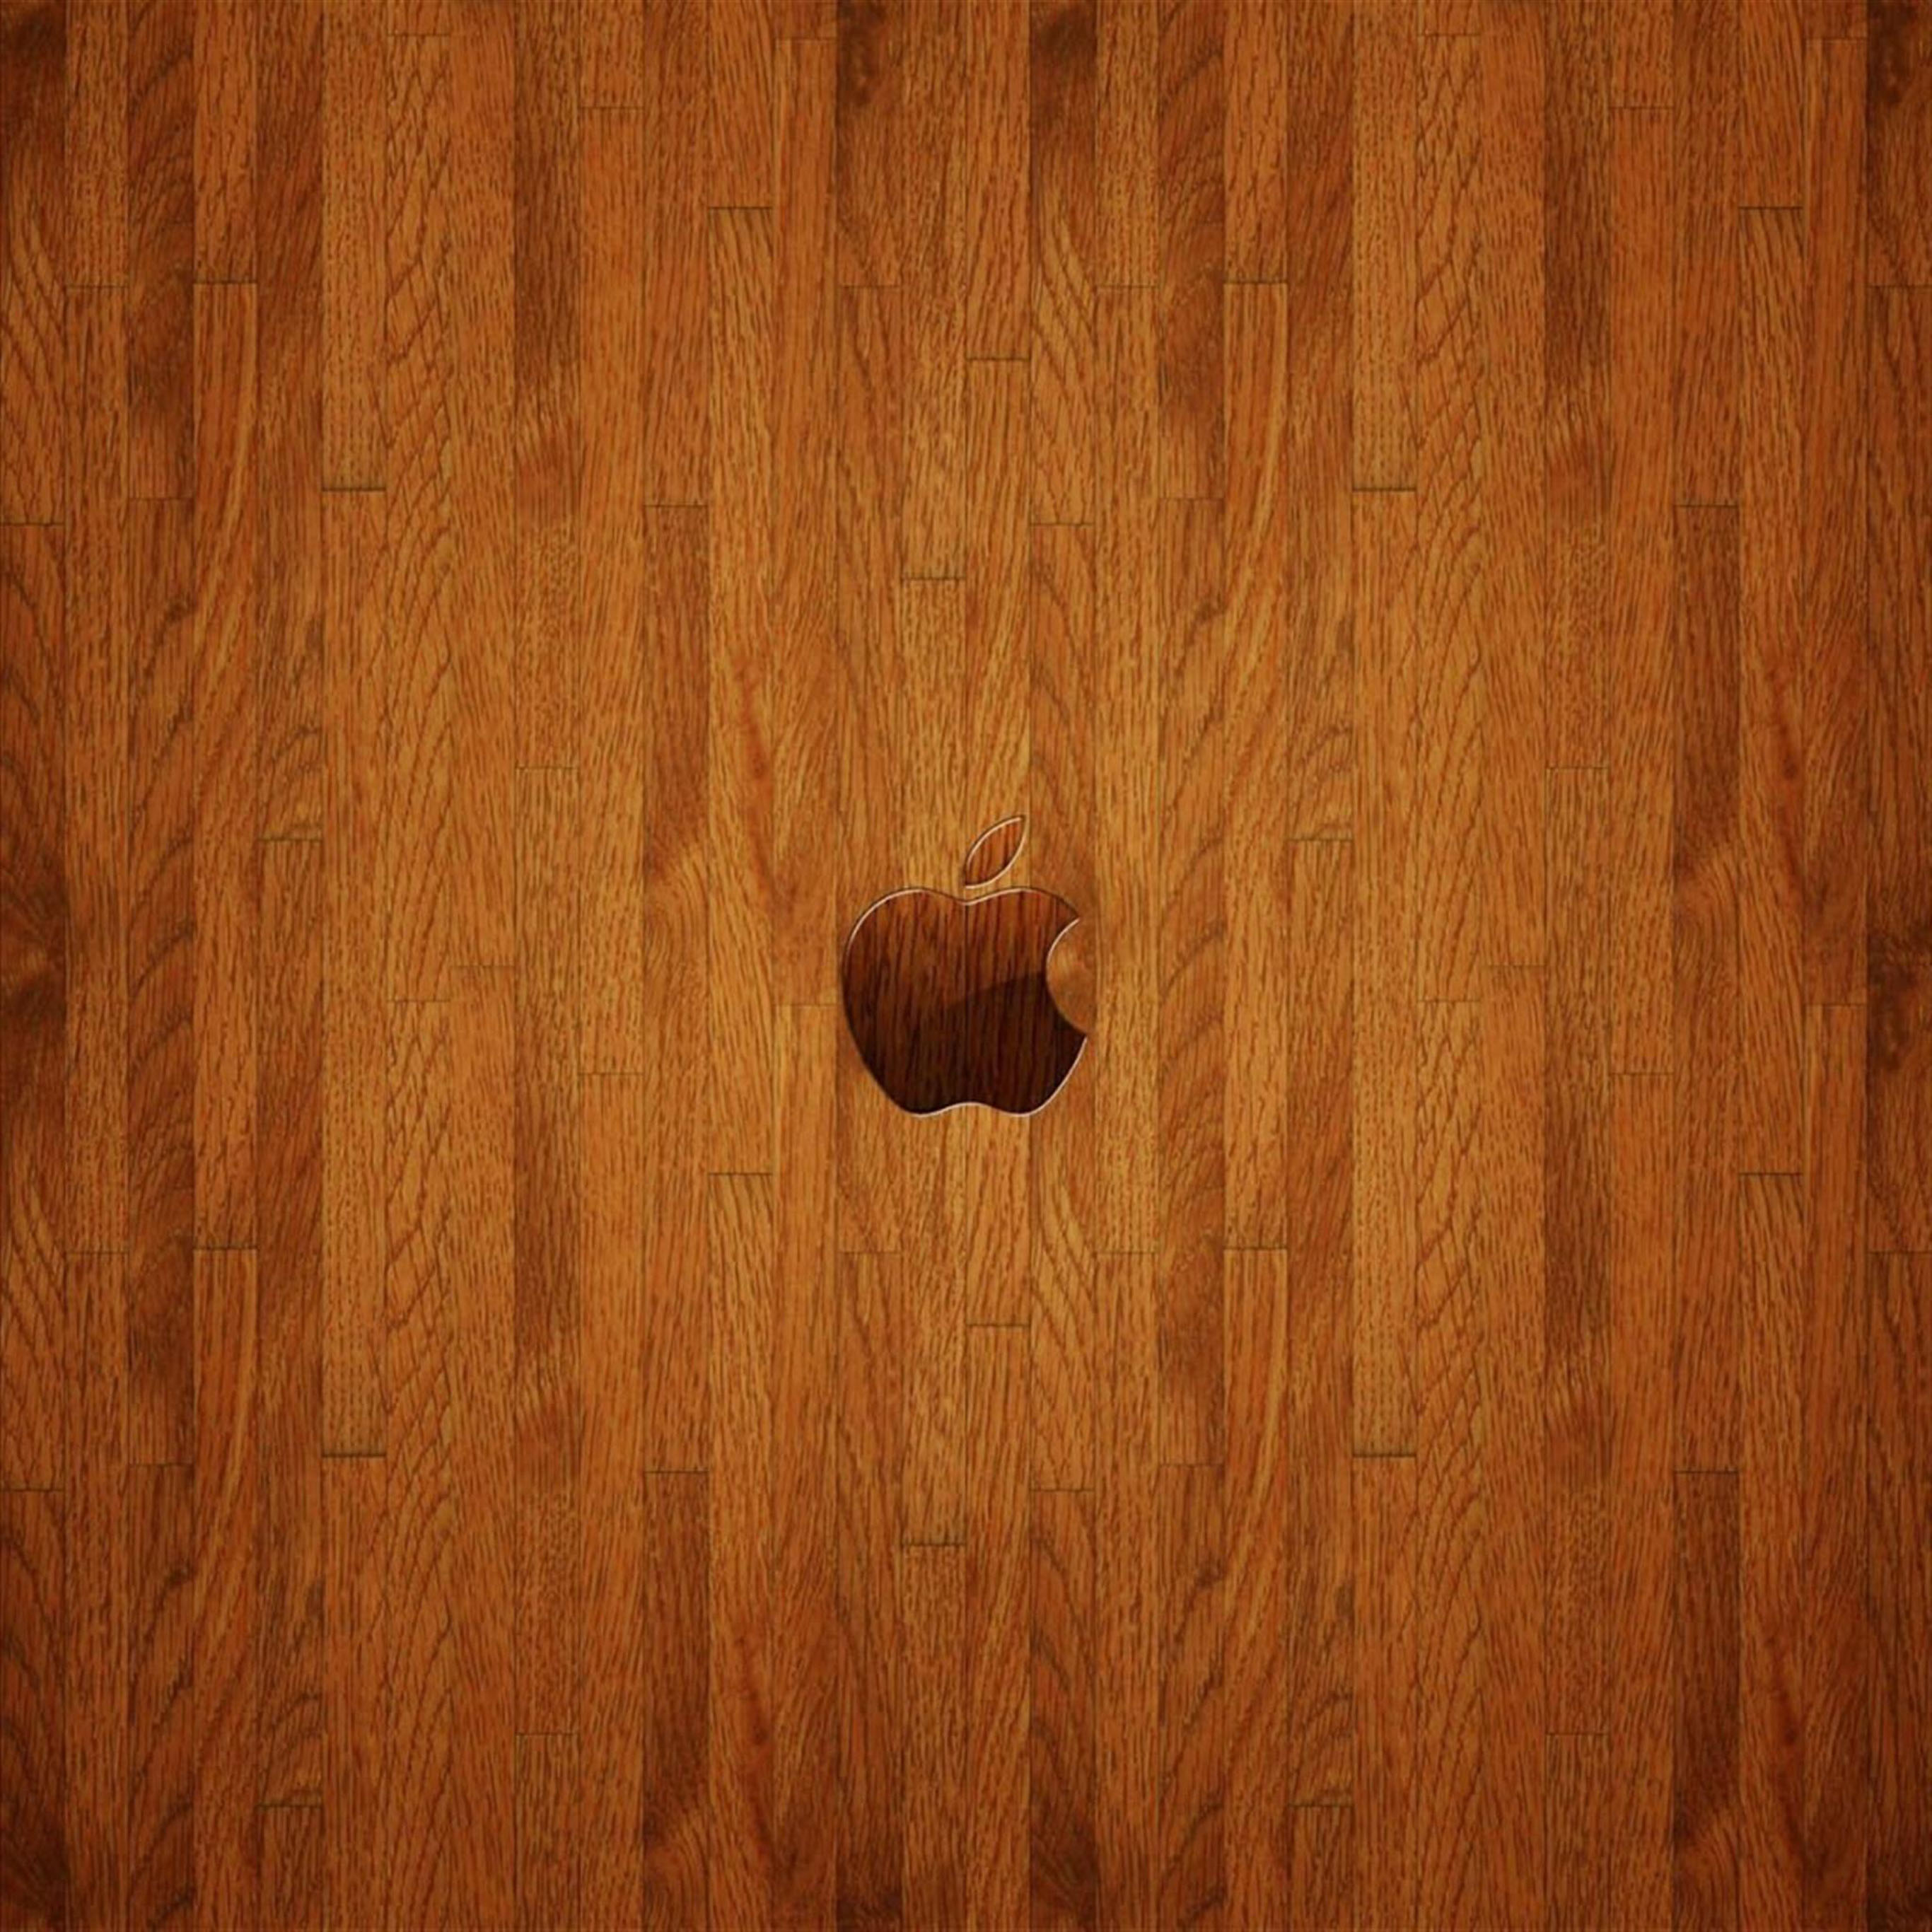 fond wallpaper,wood,hardwood,wood flooring,brown,wood stain